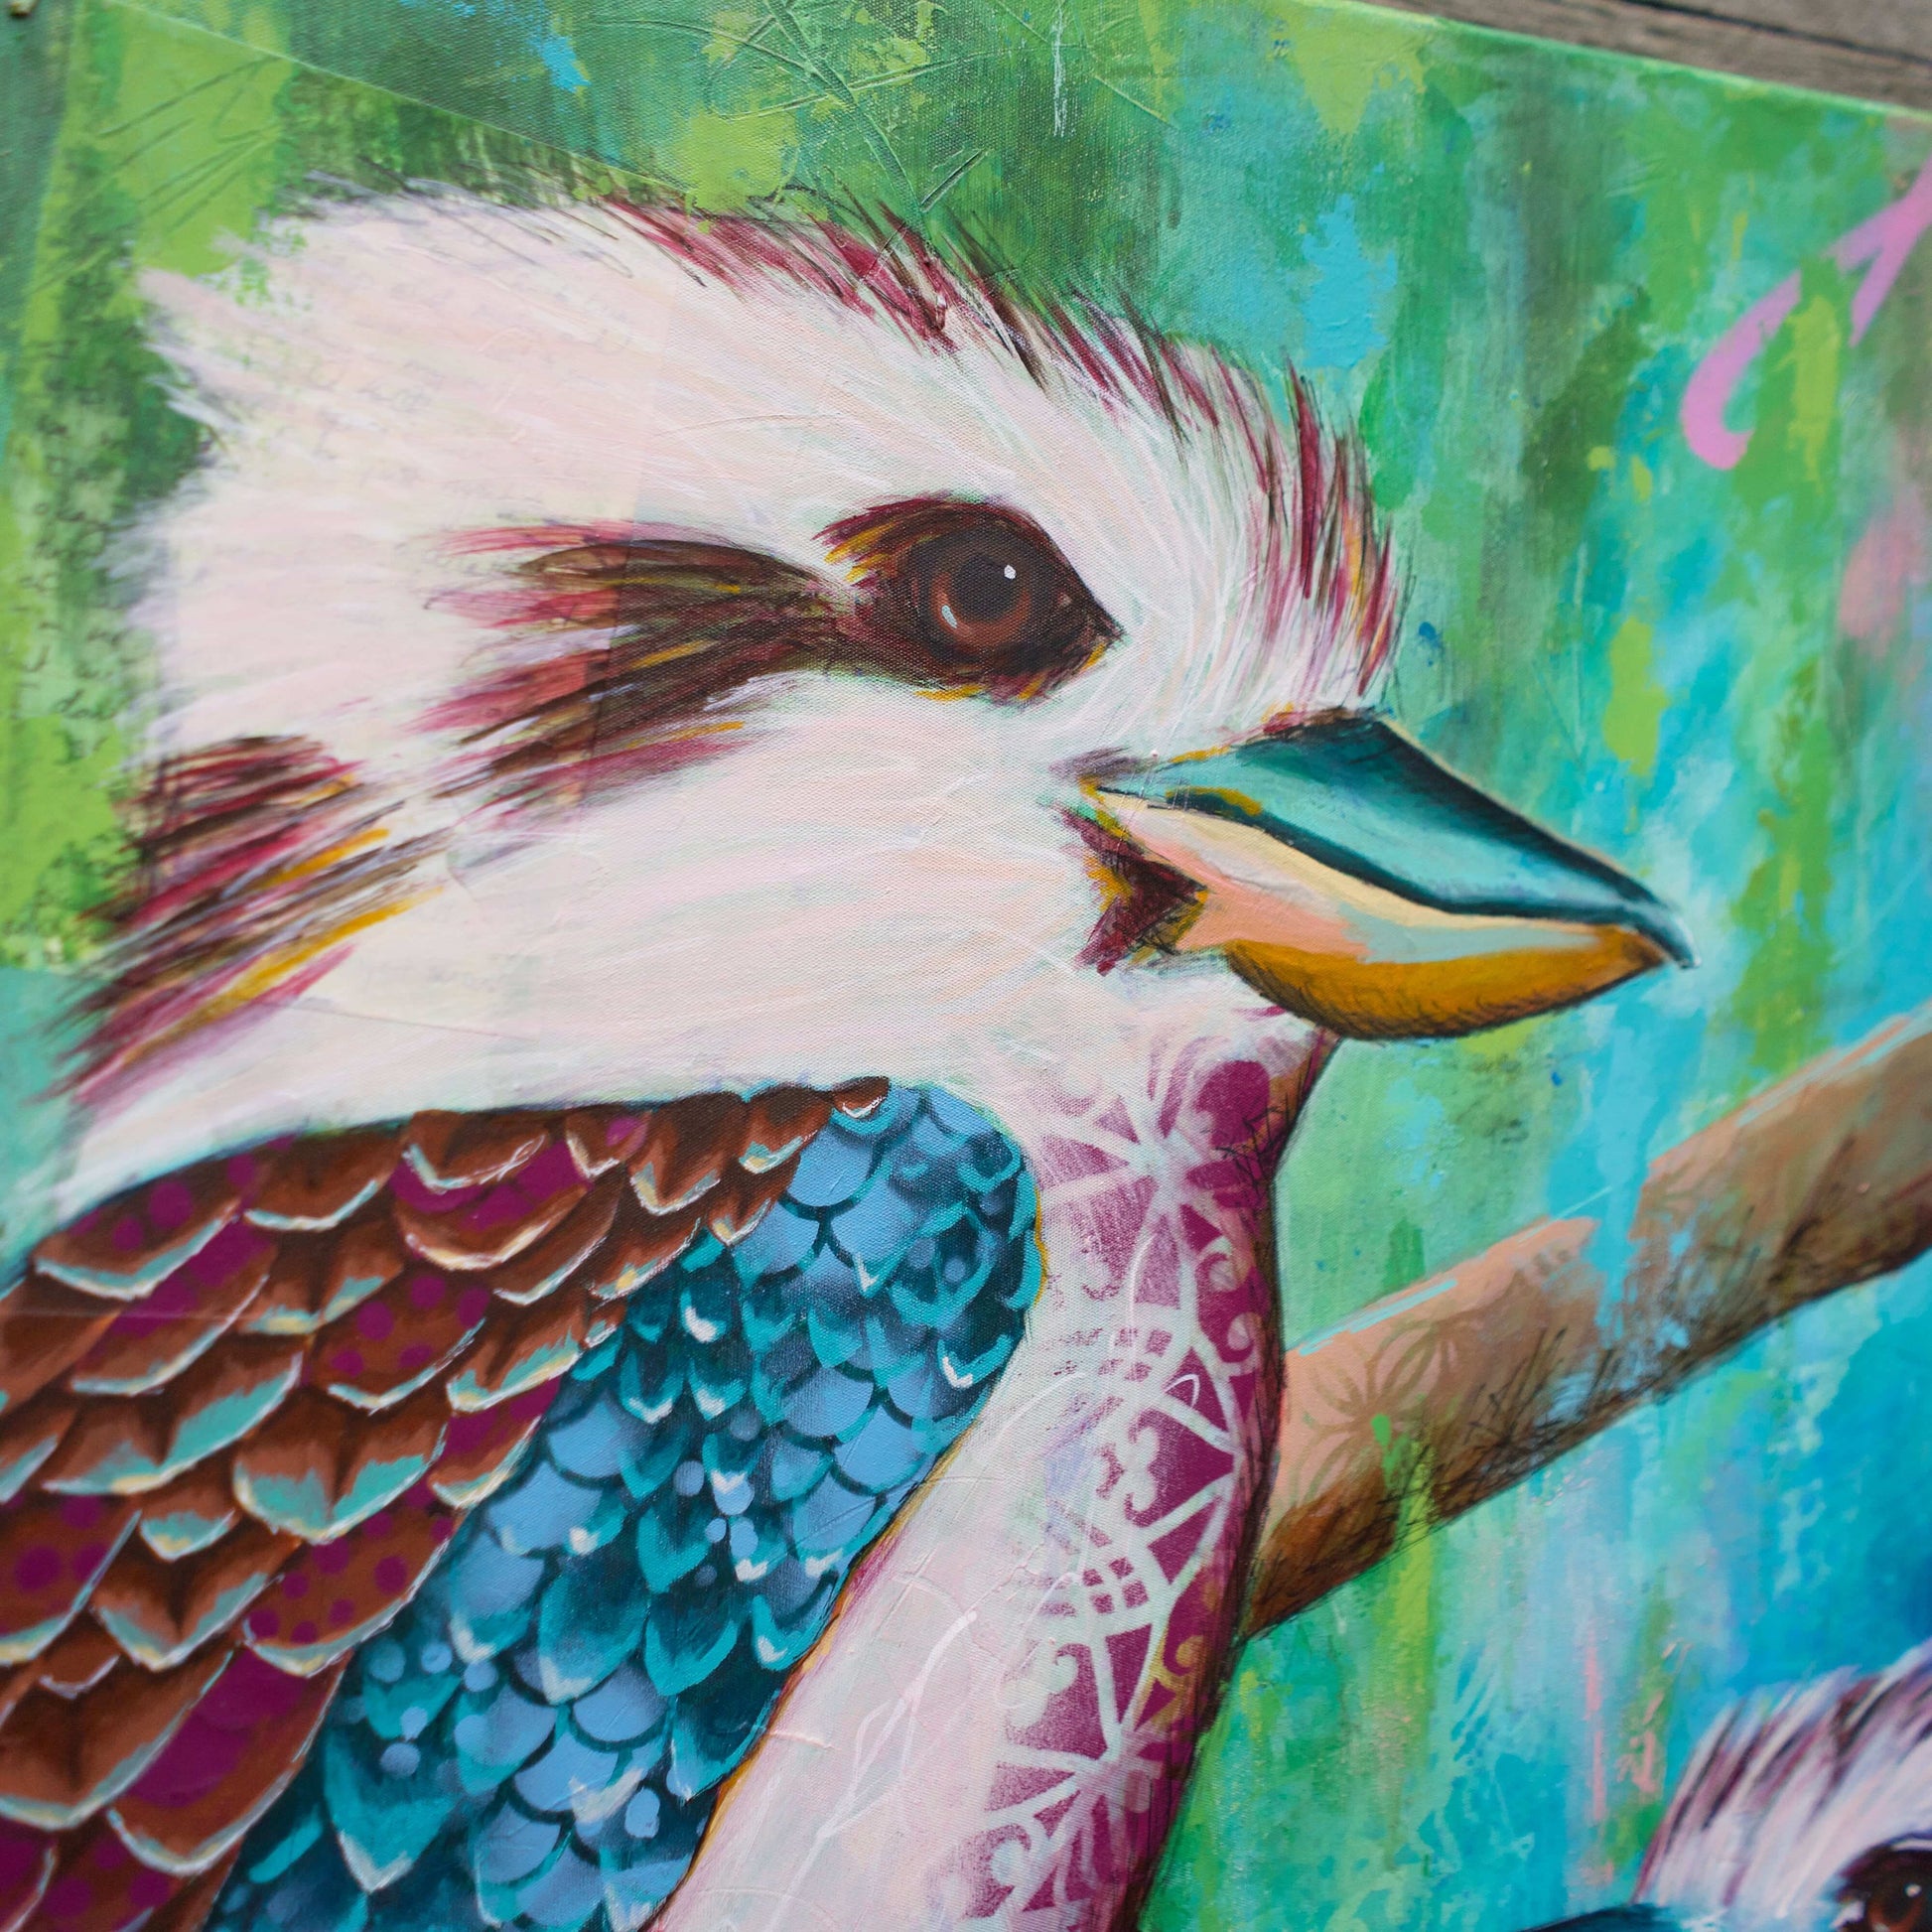 melbourne art kookaburra art colourful kookaburra painting